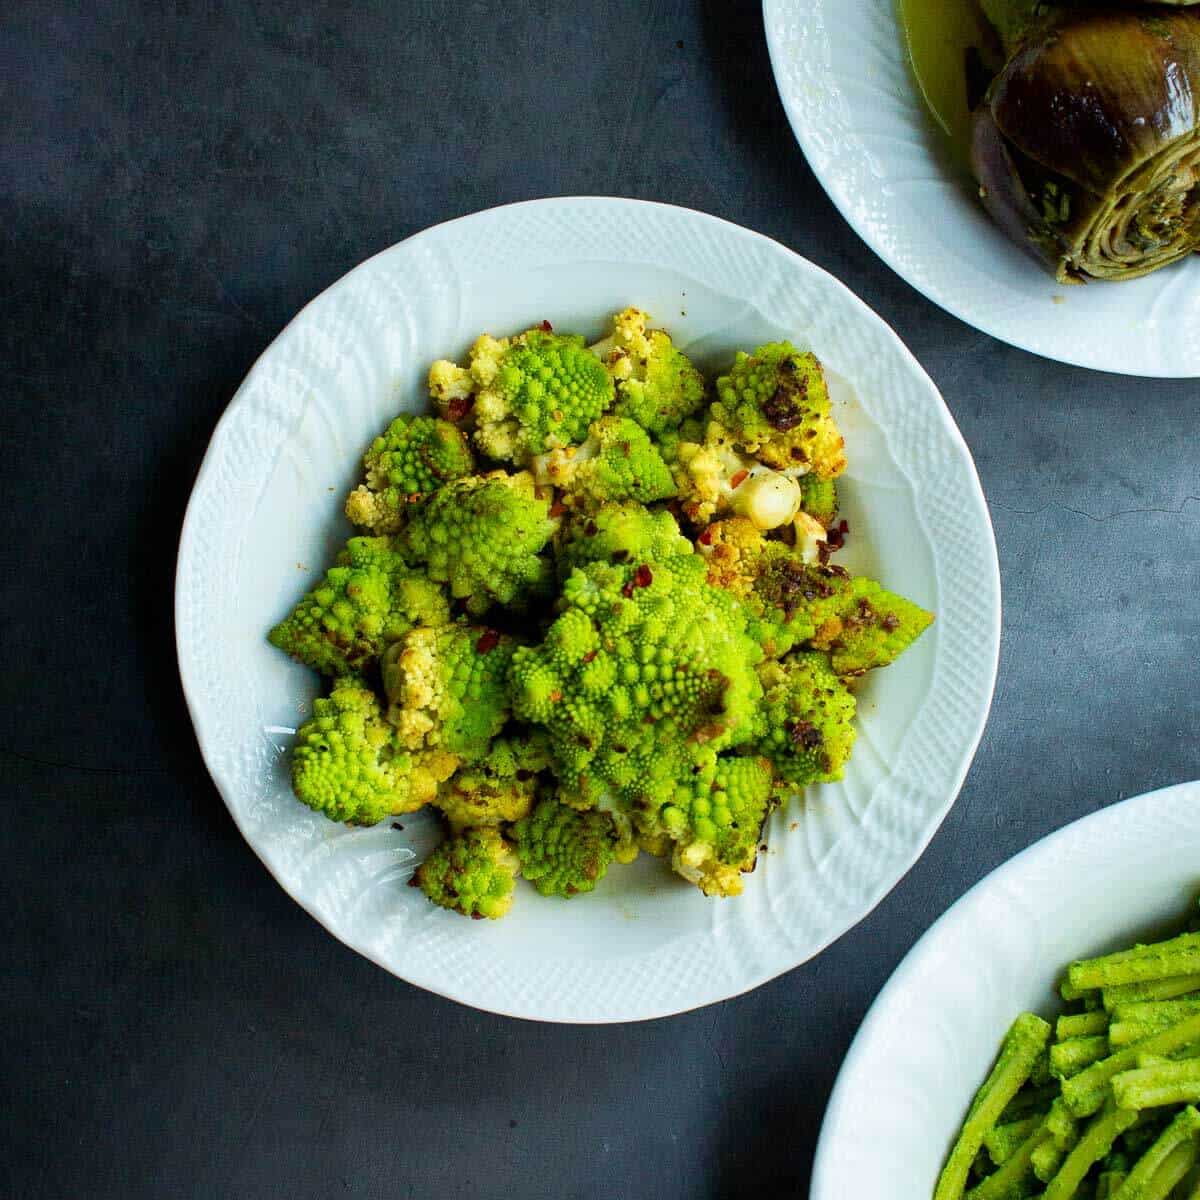 Romanesco Broccoli Recipe | Our Plant-Based World